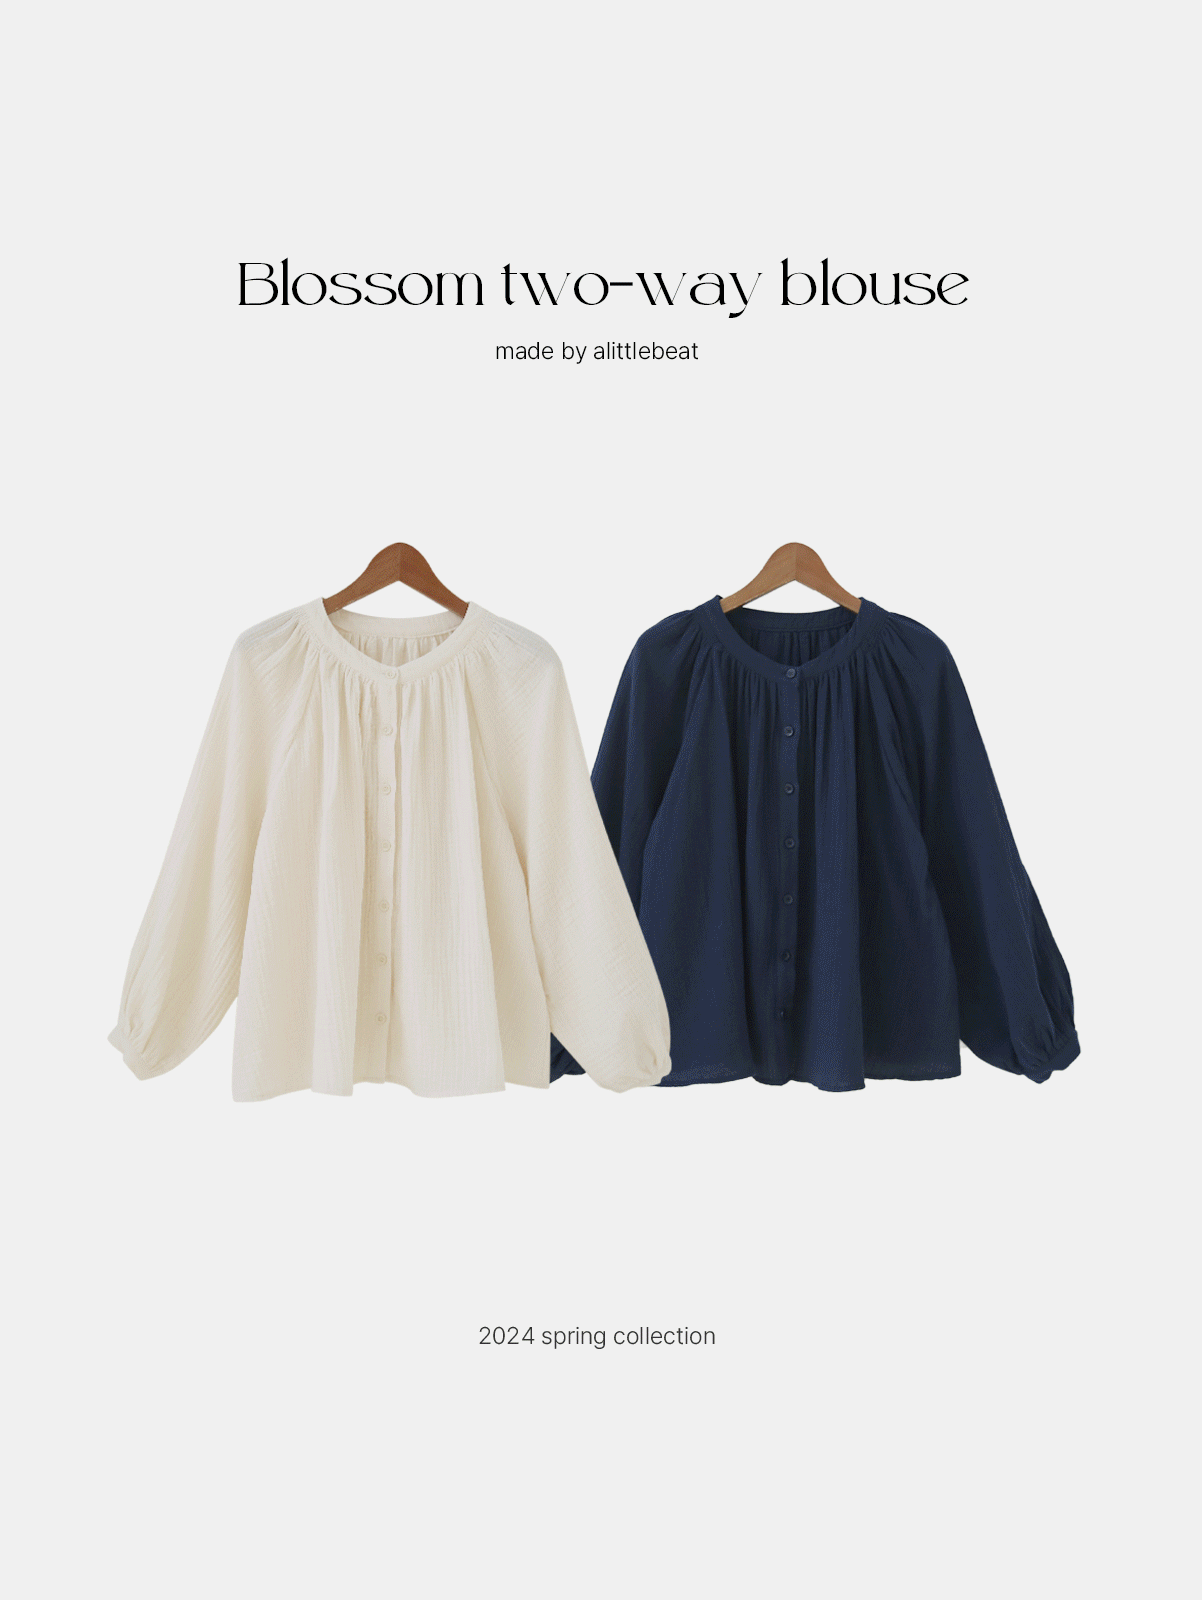 자체제작 blossom two-way blouse (2color) 추천!